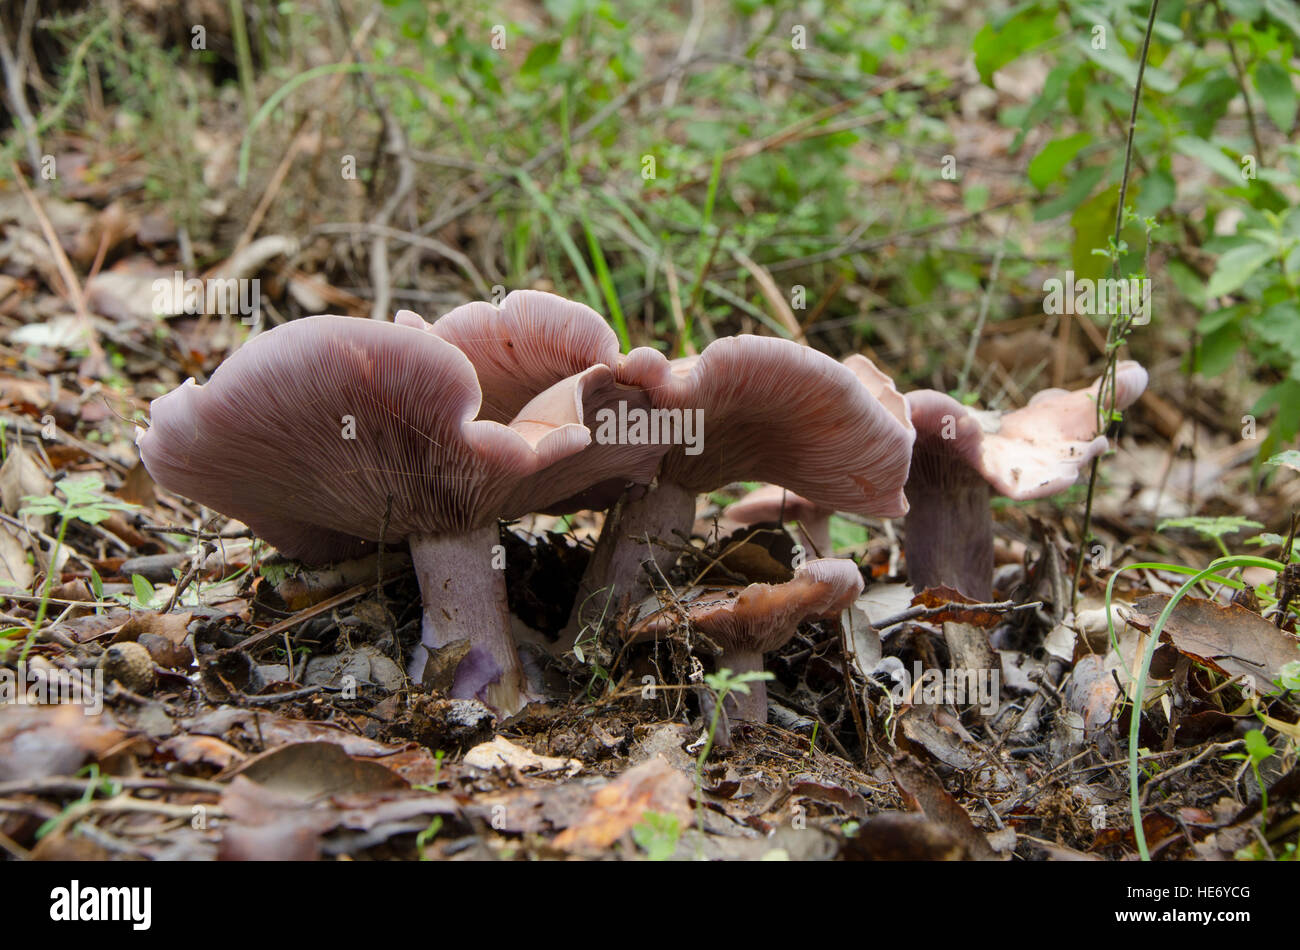 Wood blewit, Lepista nuda, Wood Blewit edible mushroom growing in forest, Spain. Stock Photo